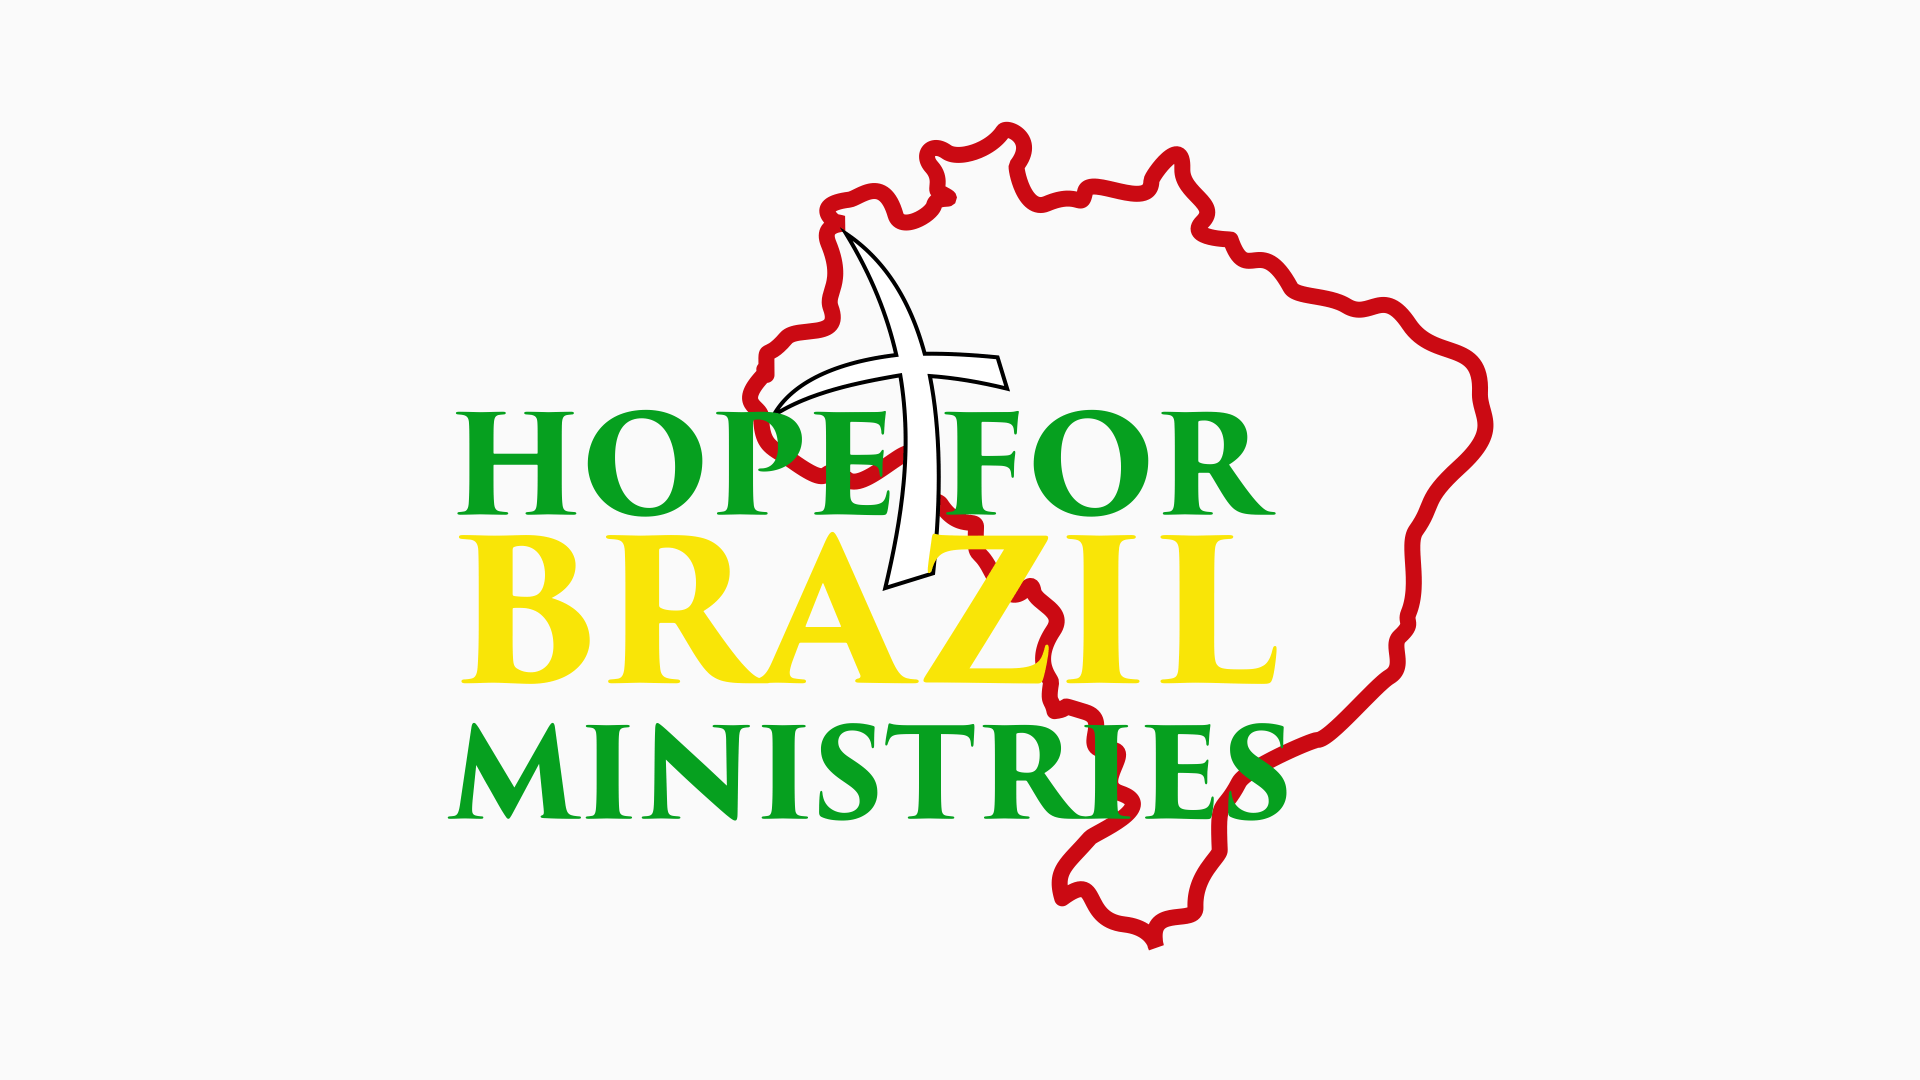 Voltando para os EUA – Primeira viagem ao Brasil 2018